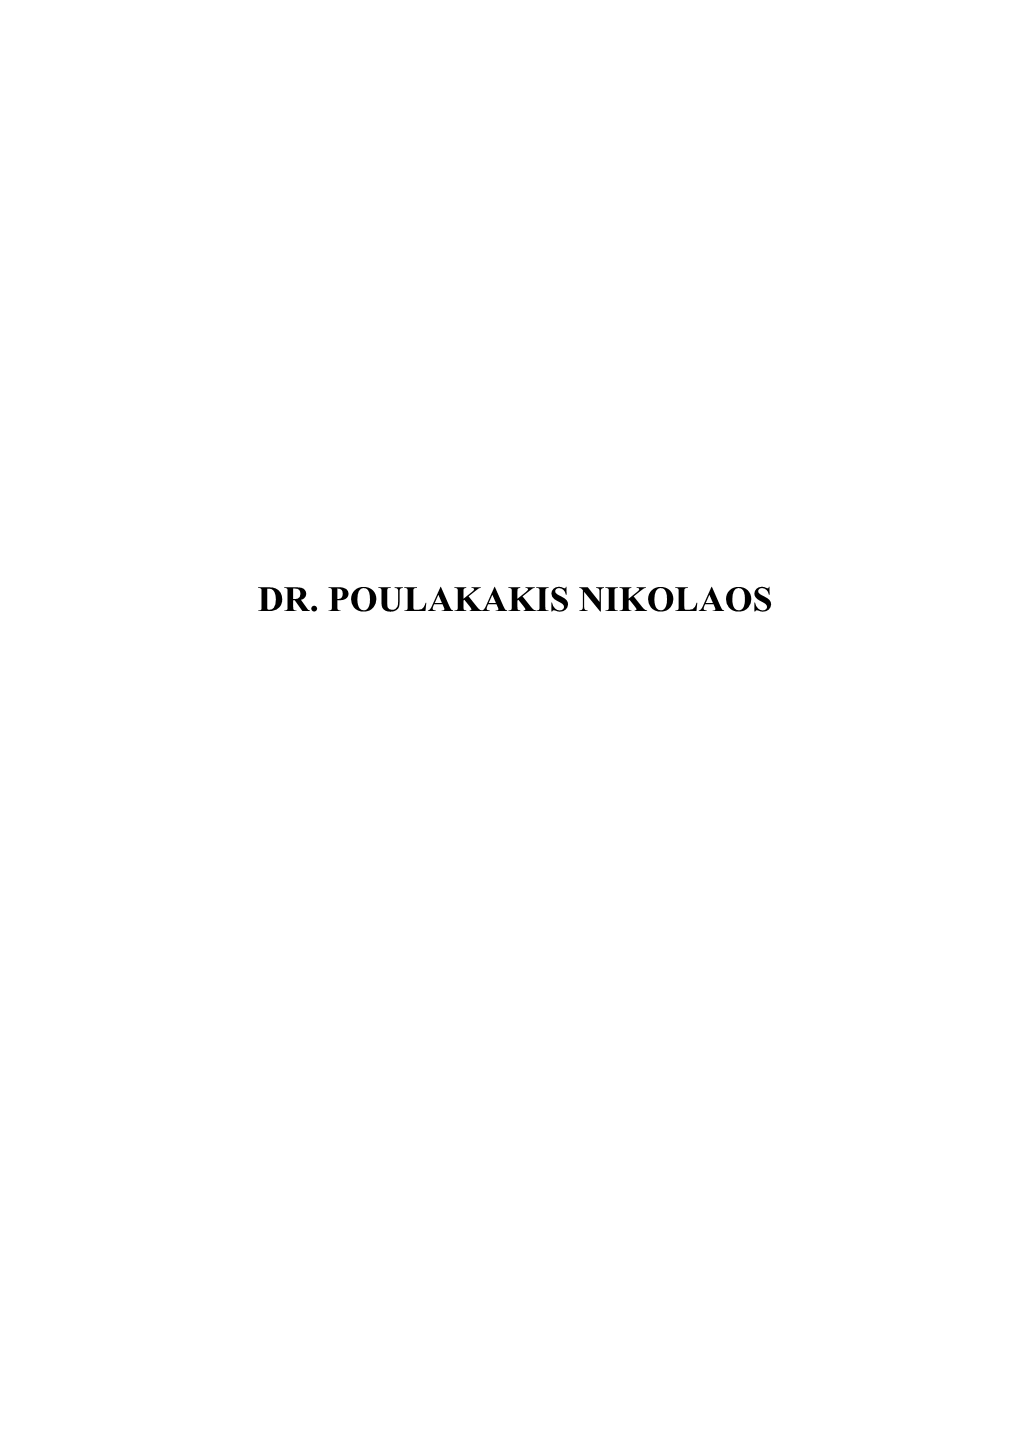 Dr. Poulakakis Nikolaos